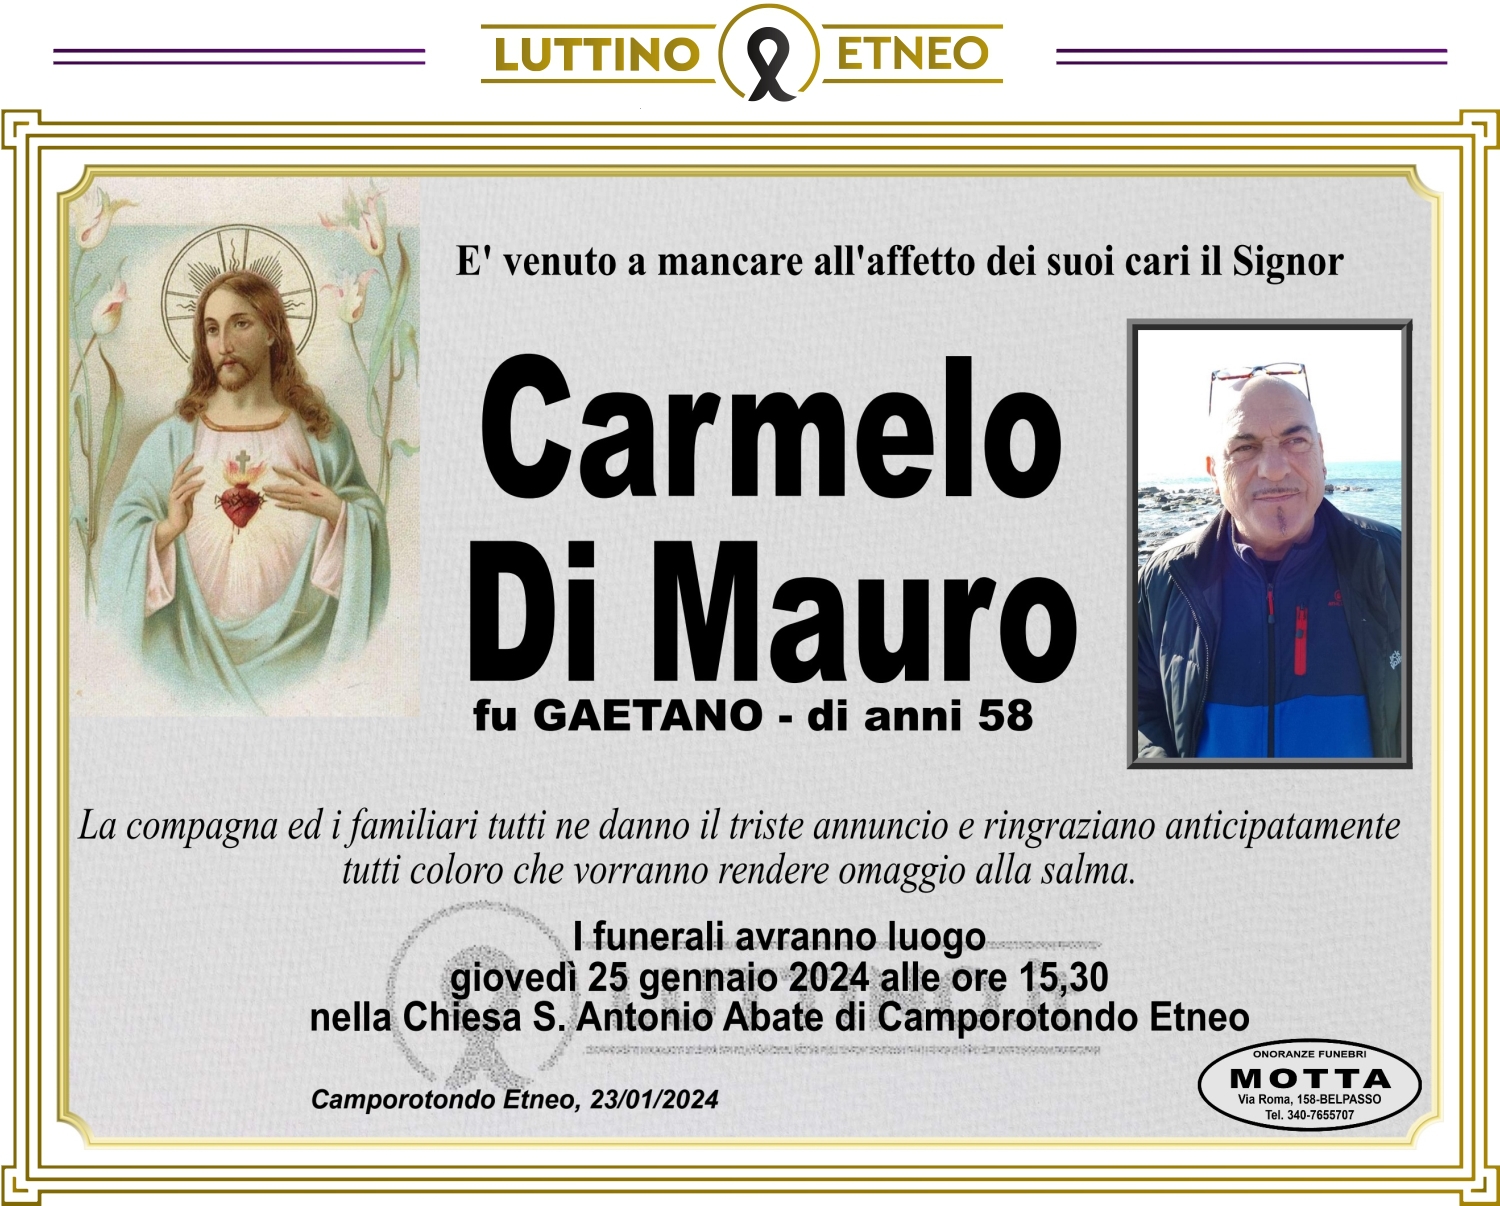 Carmelo Di Mauro